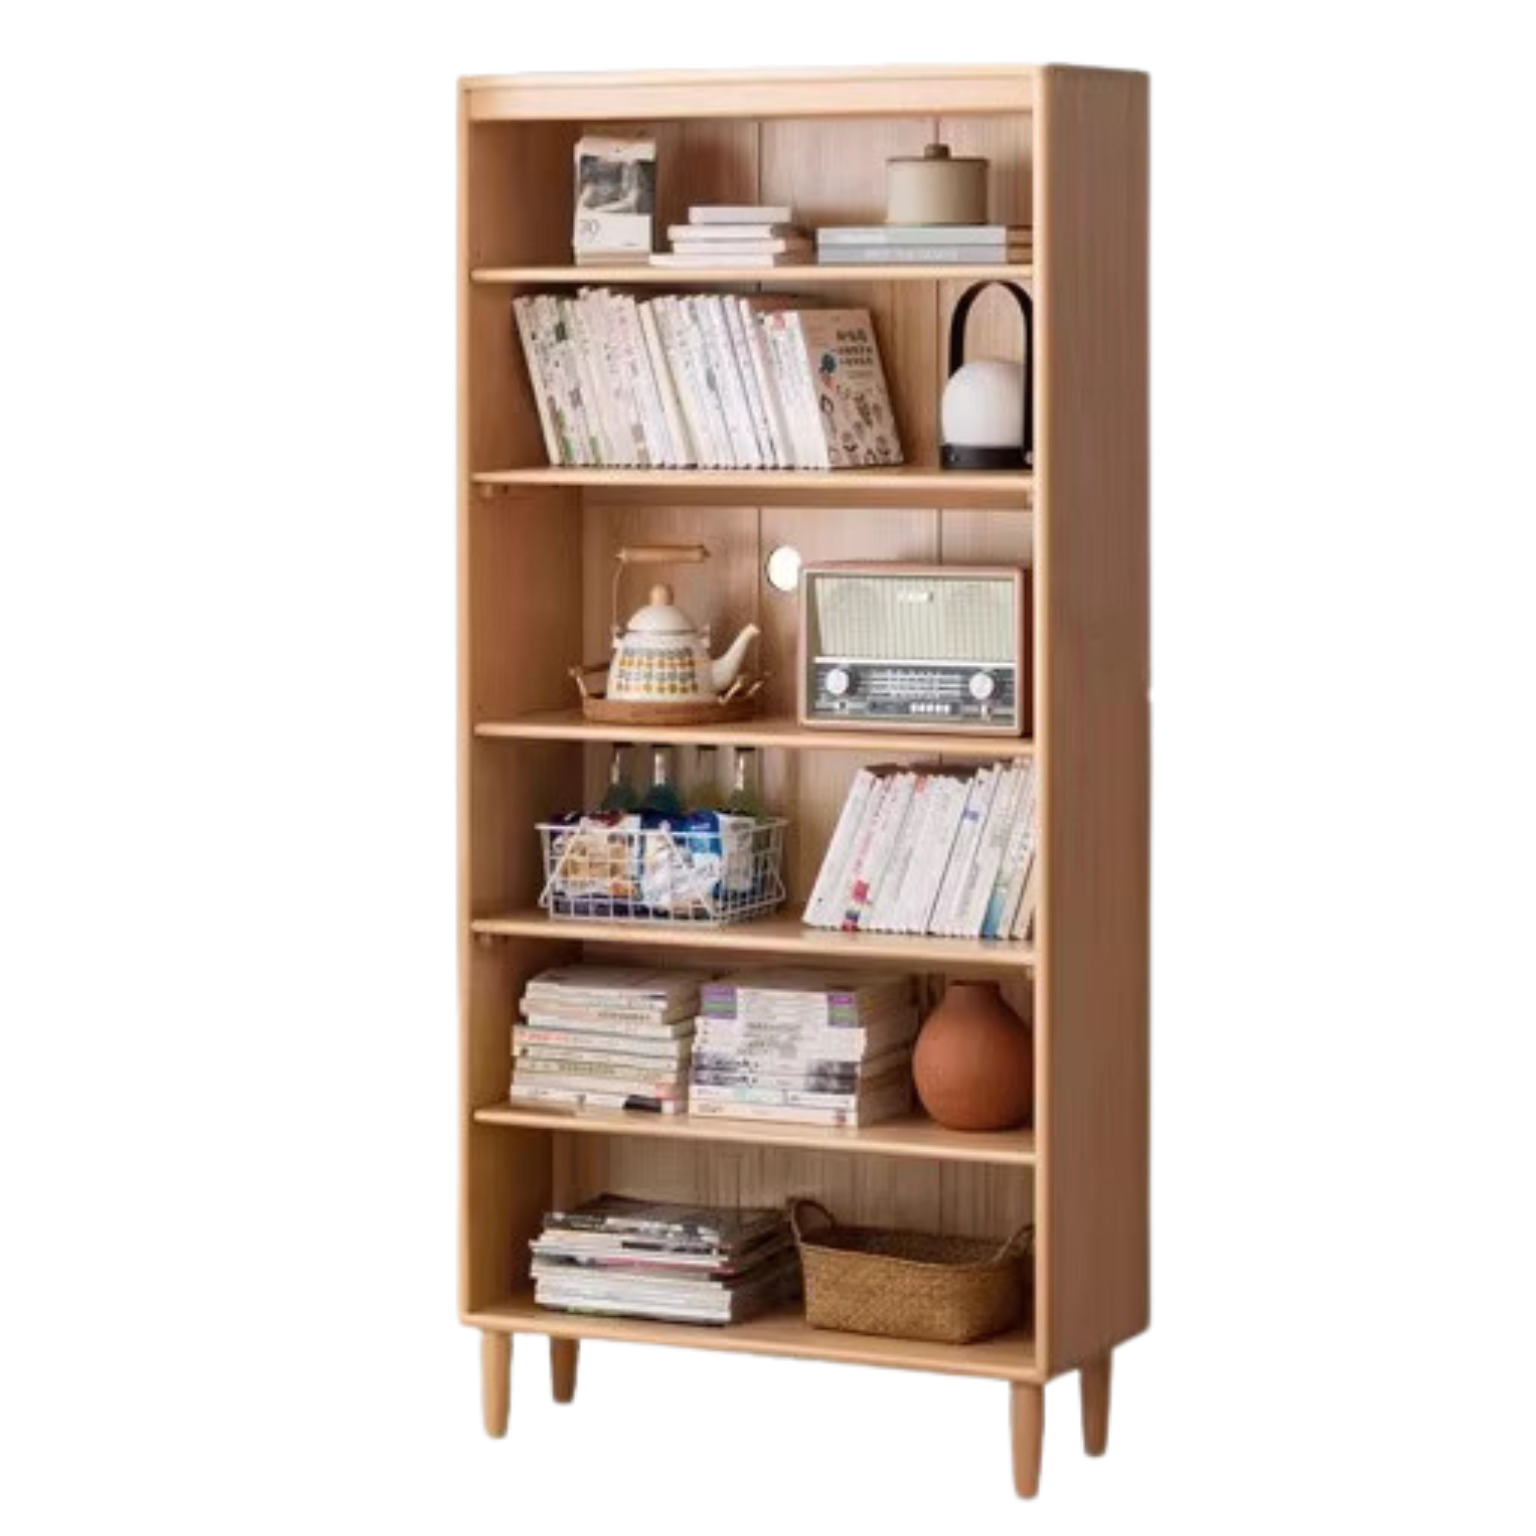 Beech solid wood bookshelf combination ,open storage cabinet -